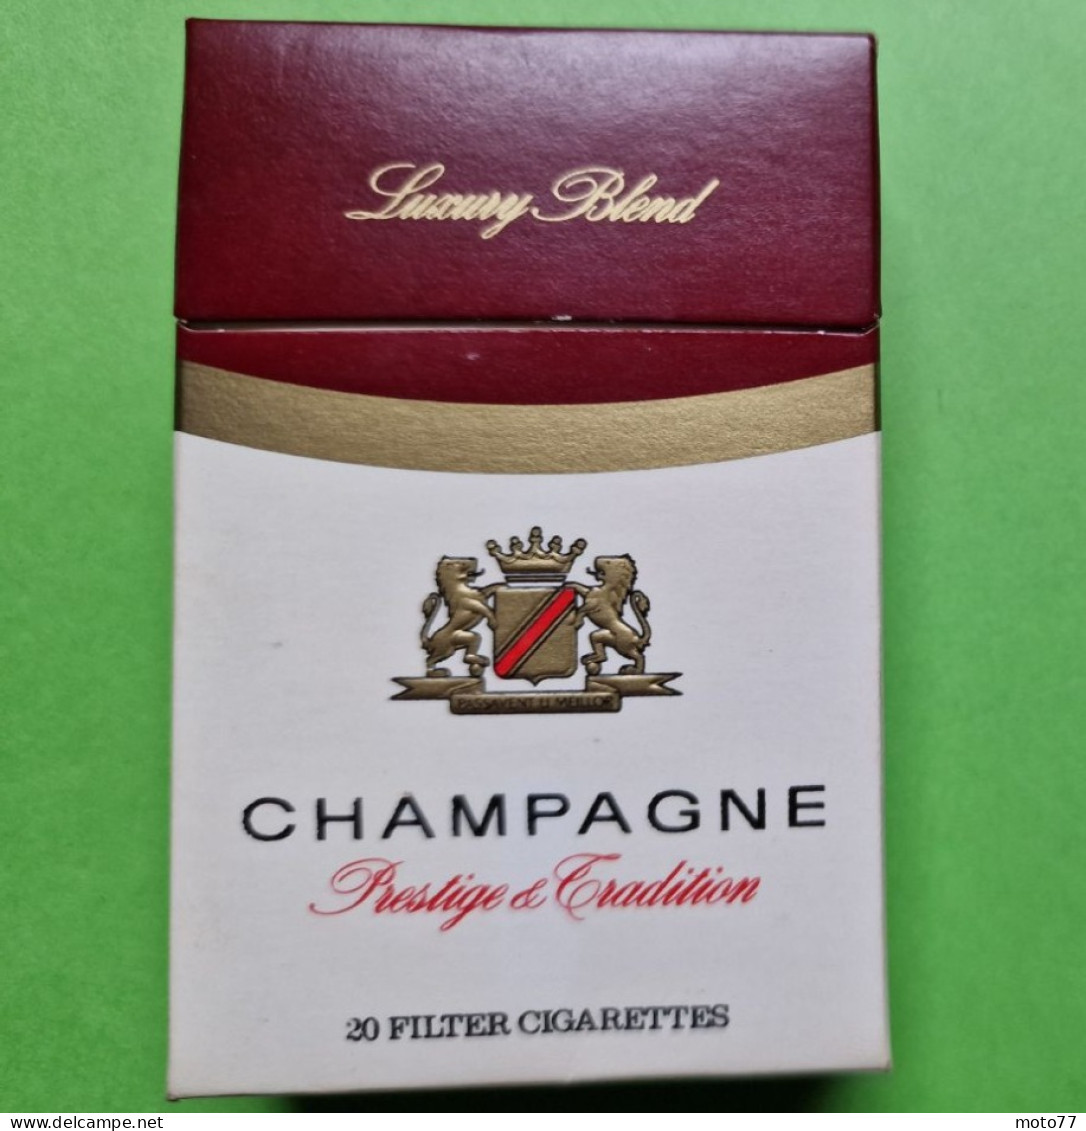 Ancien PAQUET De CIGARETTES Vide - CHAMPAGNE - Vers 1980 - Etuis à Cigarettes Vides